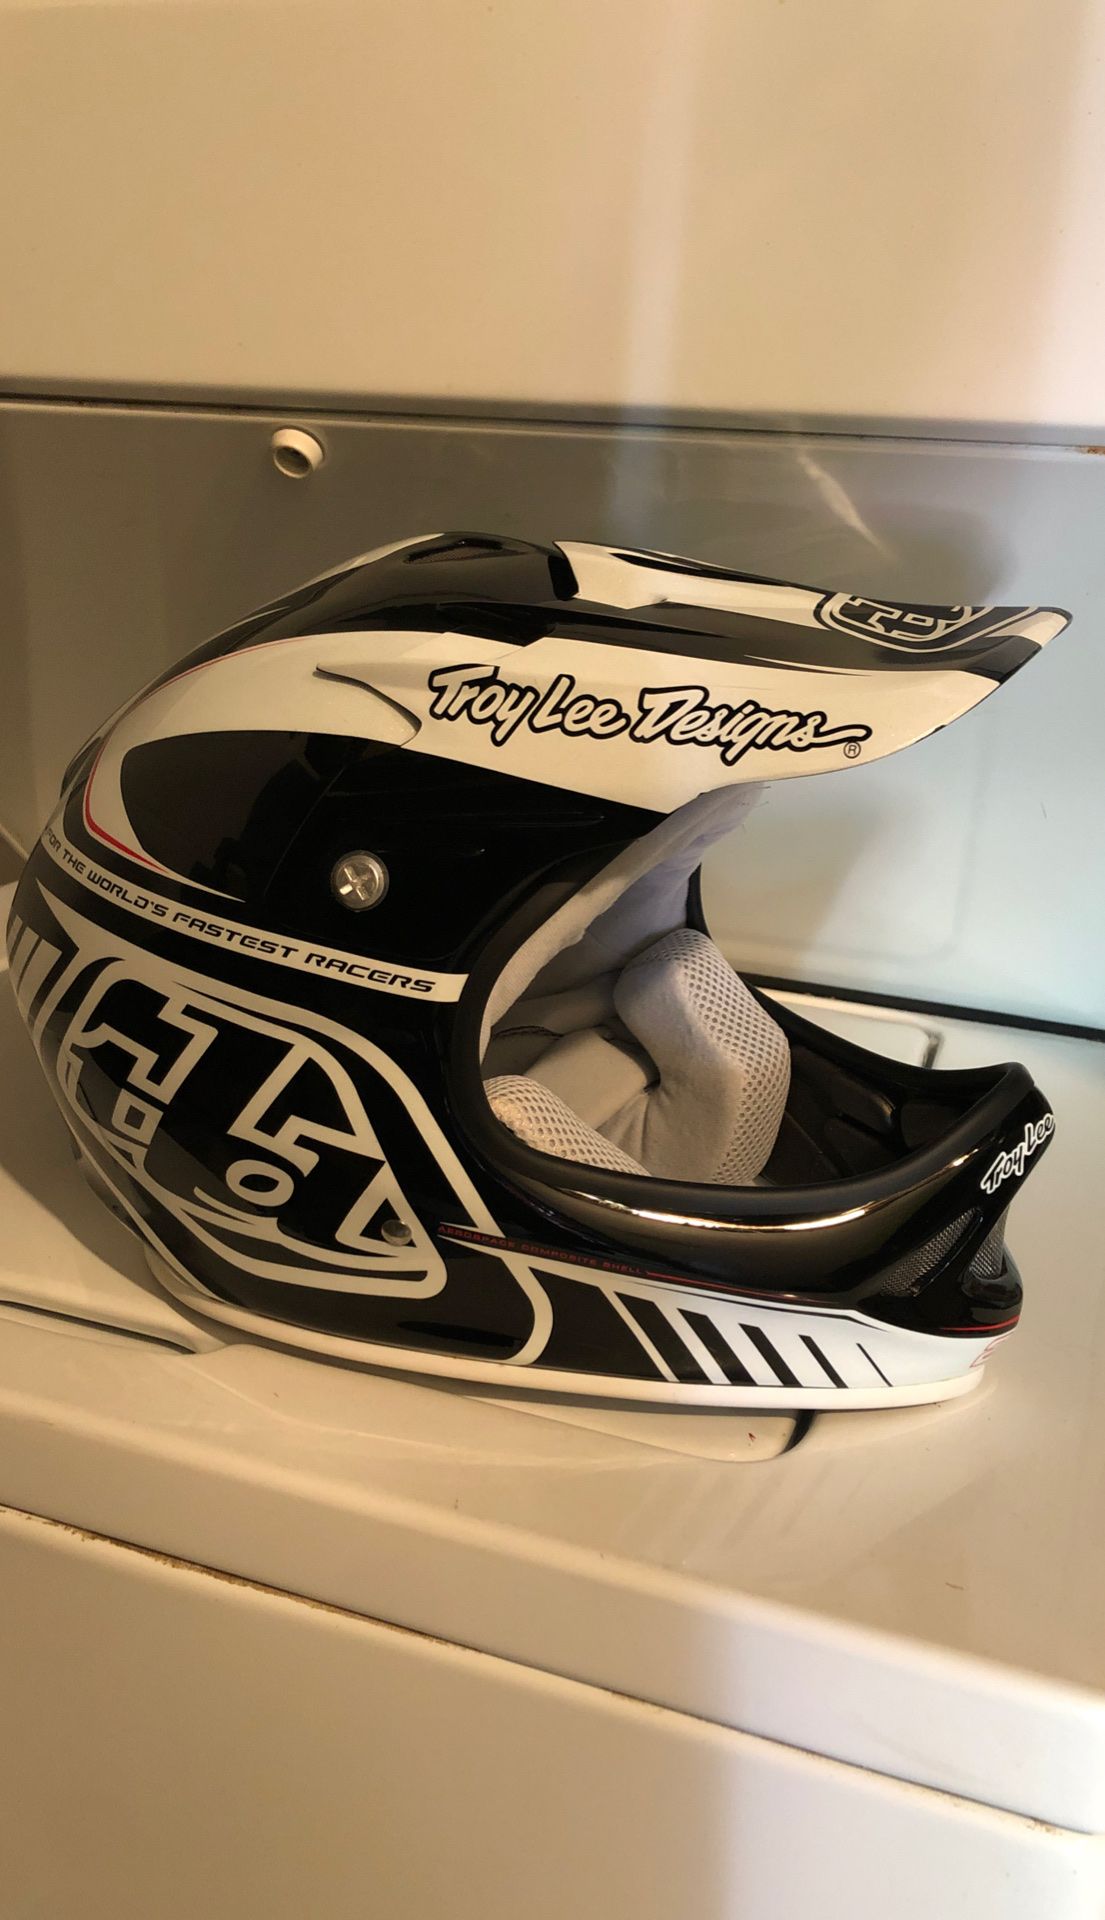 Troy lee design’s D2 bike helmet md/lg